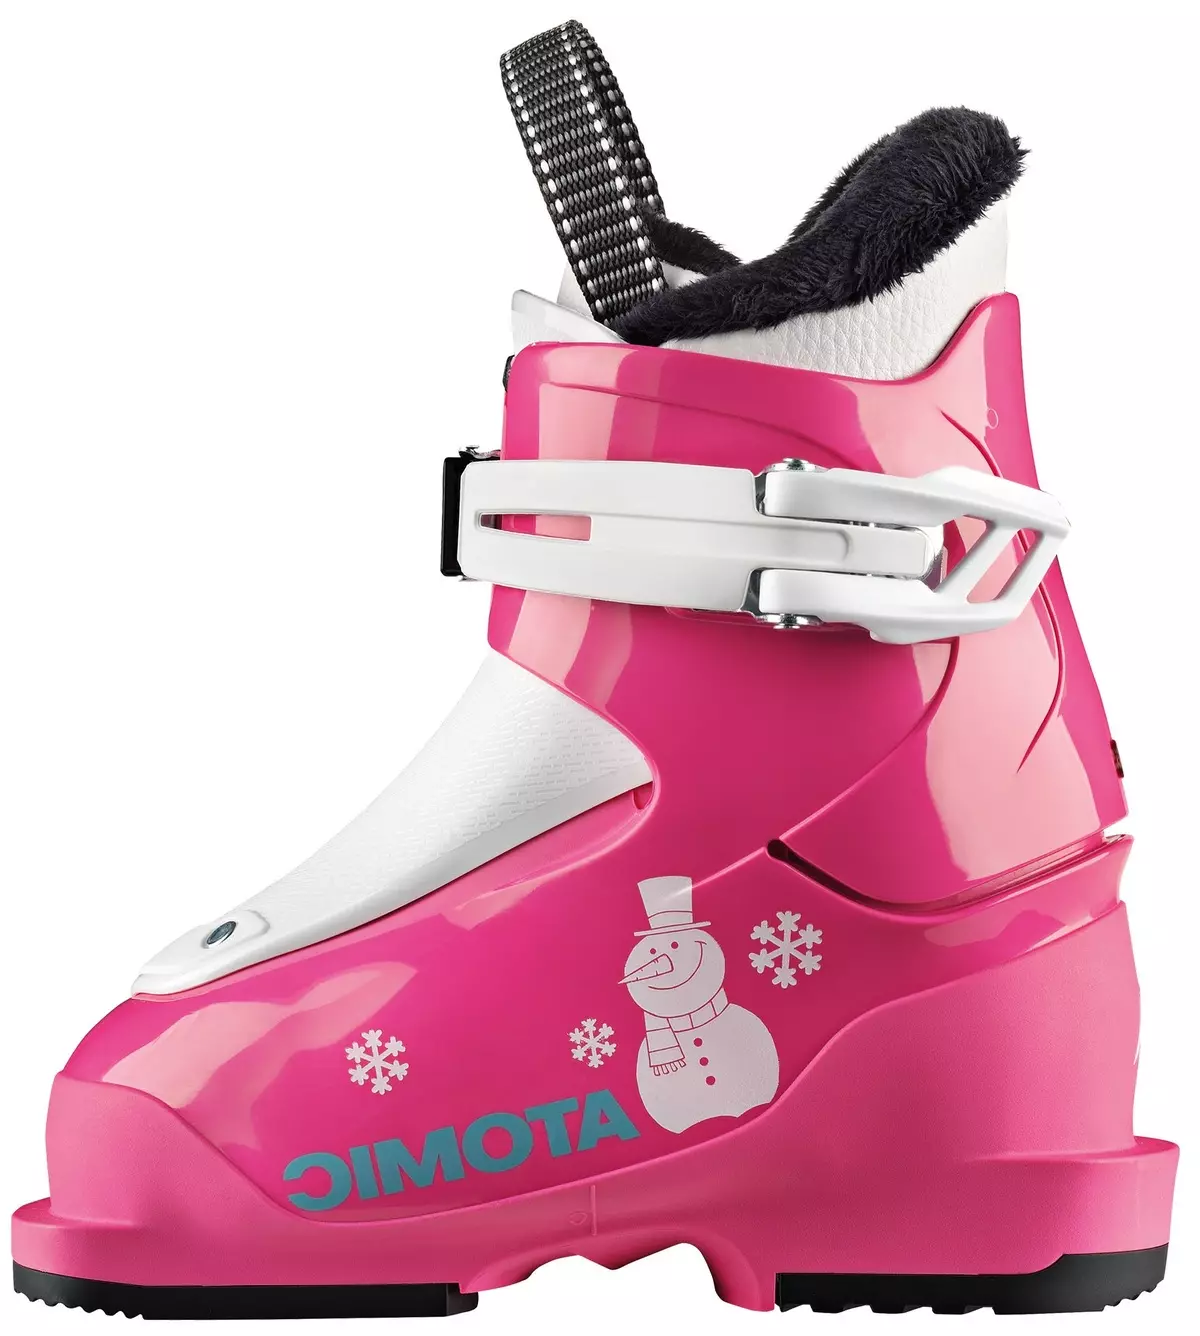 Dječje skijaške čizme: skijanje i ostale cipele i stol njihove veličine. Kako odabrati Ski čizme za djecu? Modeli 28-33 i druge veličine 1664_44